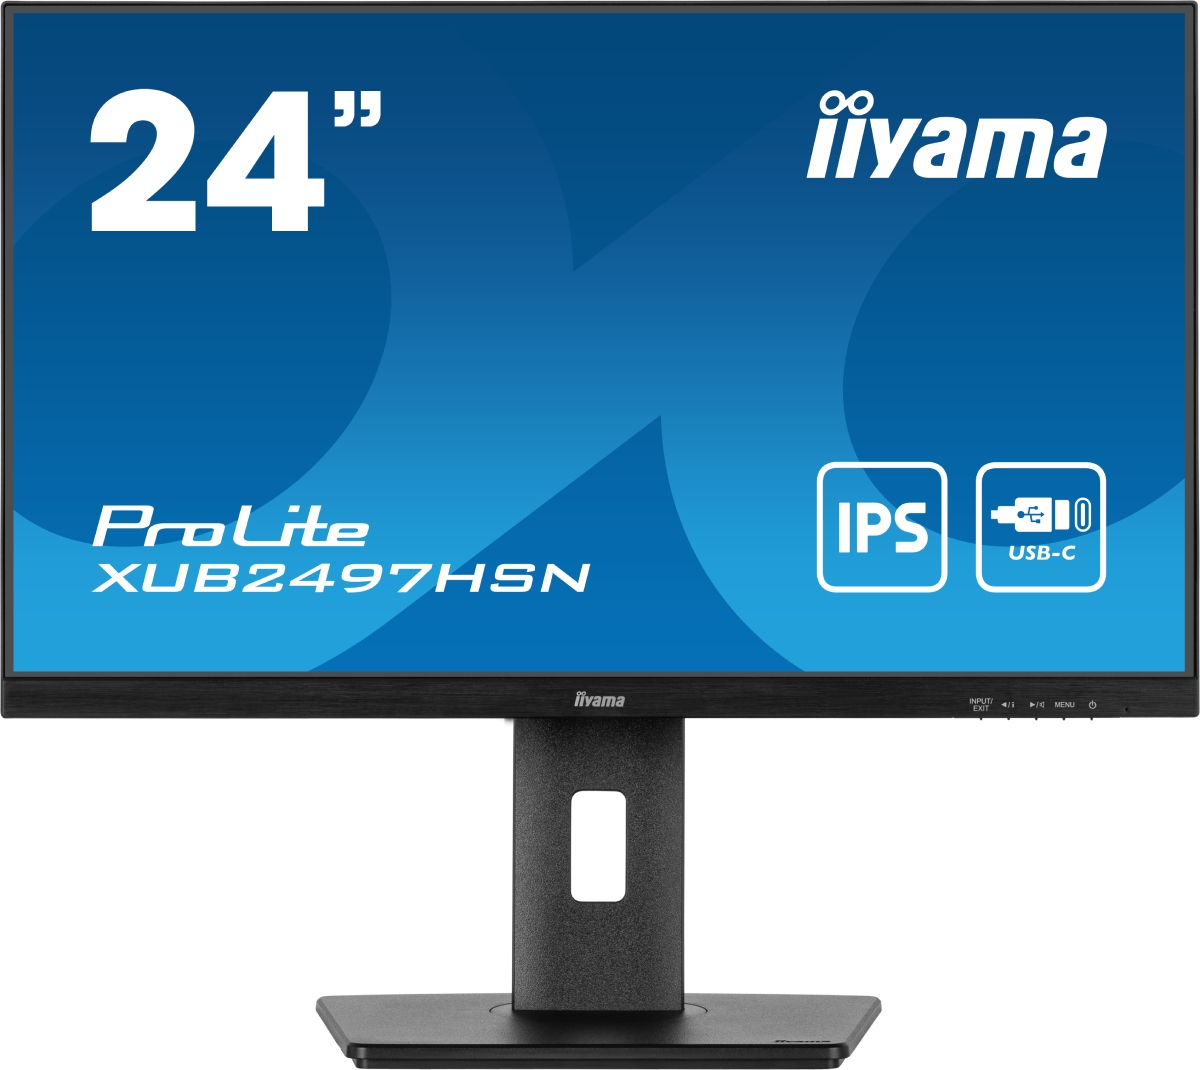 Grosbill Ecran PC Iiyama XUB2497HSN-B1 23.8" FHD/100Hz/IPS/USB-C/RJ45